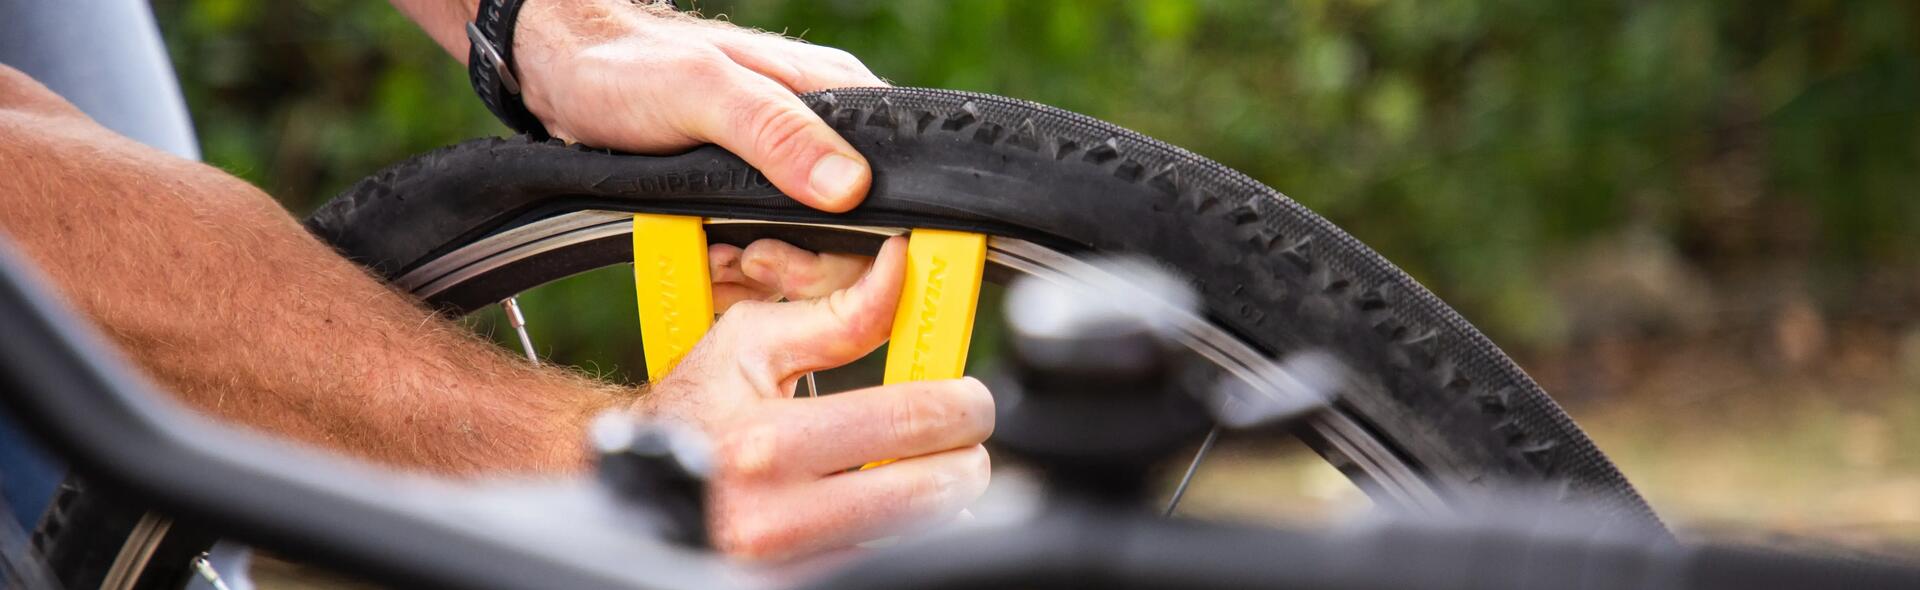 Réparer un pneu de vélo